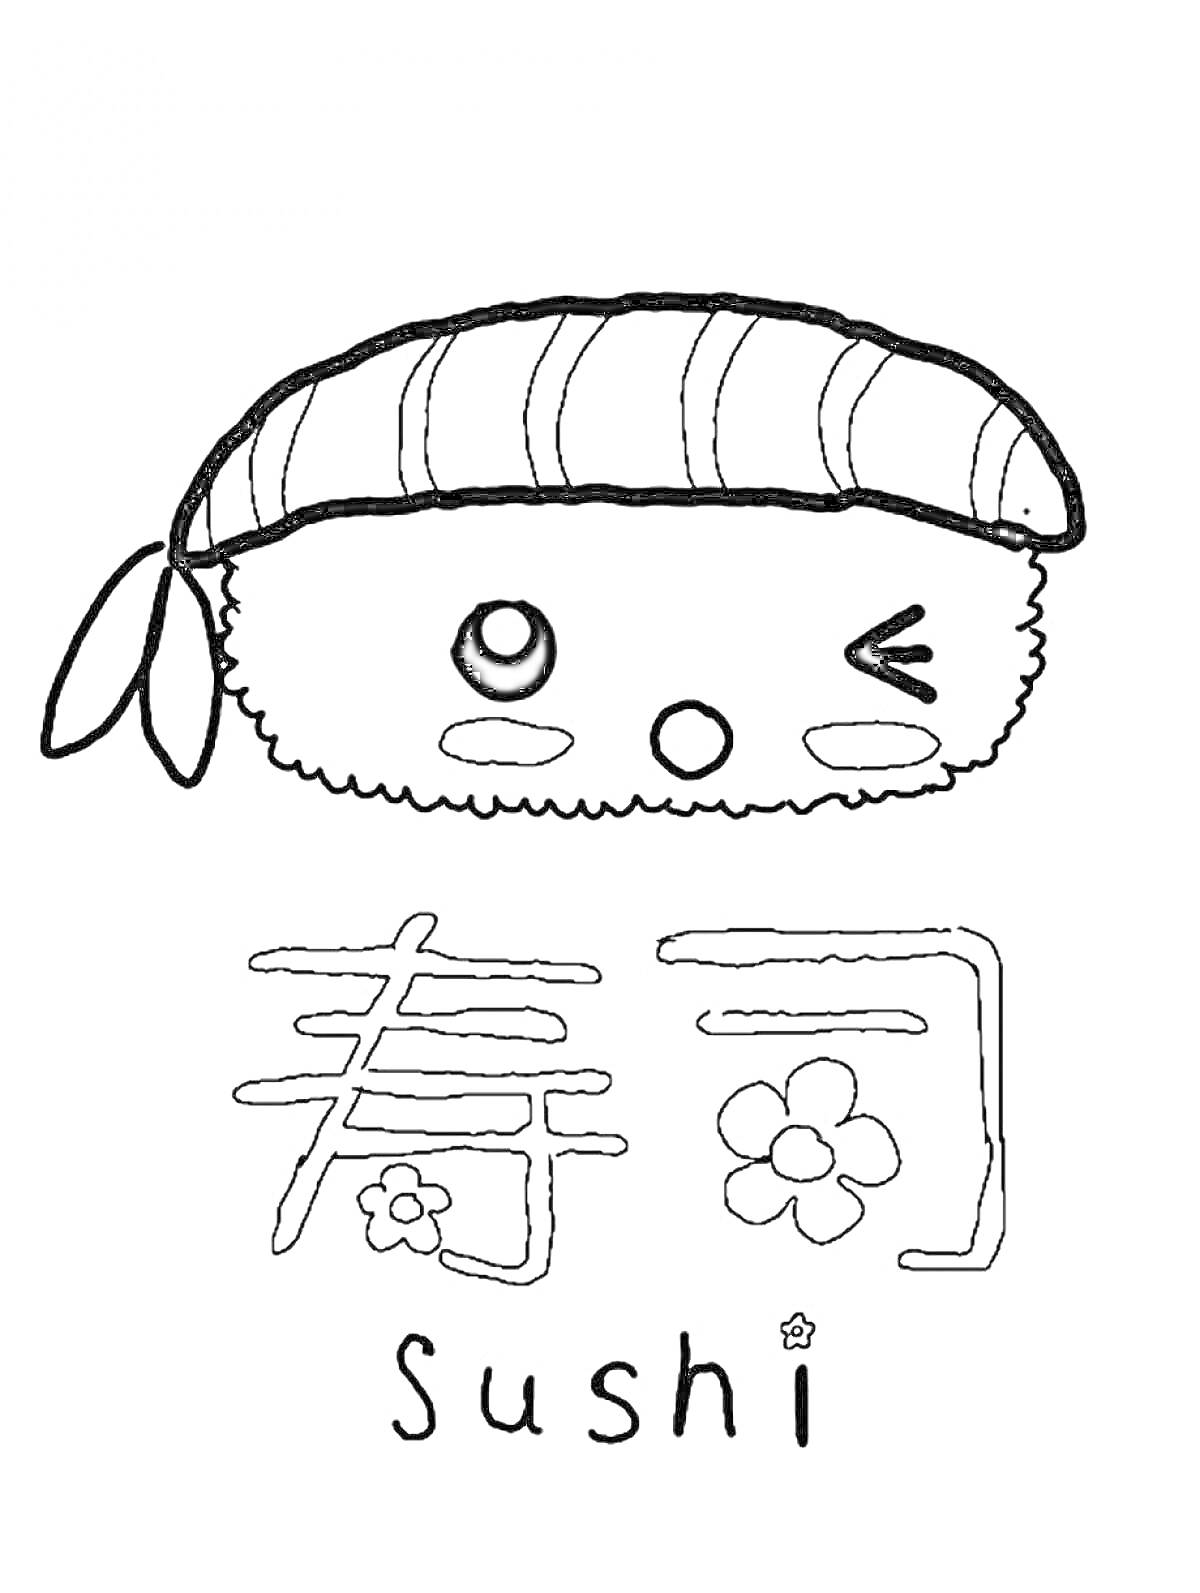 Ролл с повязкой на голове, мордашкой, и надписями '寿司' и 'sushi'